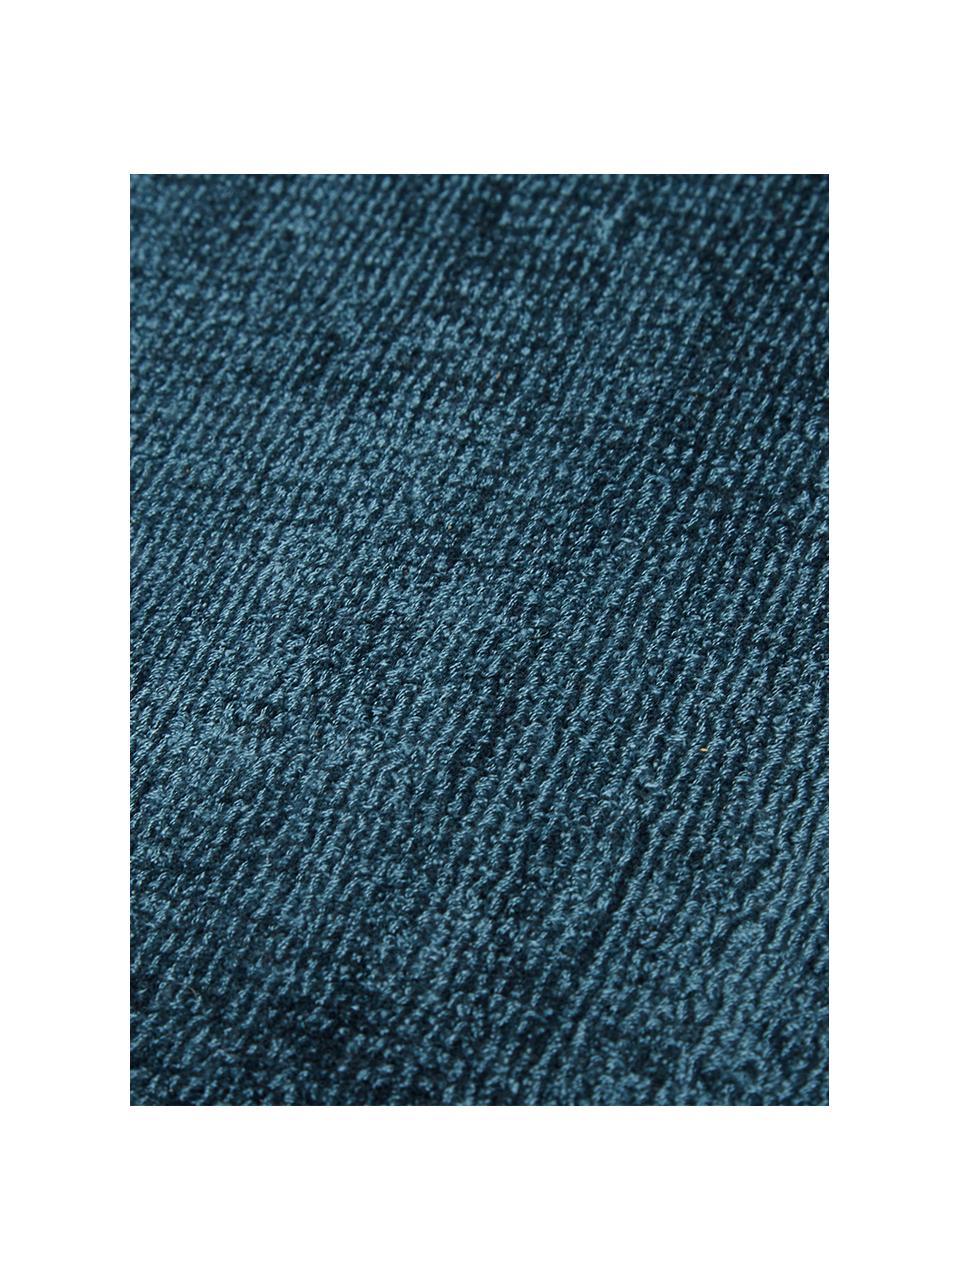 Tappeto in viscosa tessuto a mano Jane, Retro: 100% cotone Il materiale , Blu scuro, Larg. 160 x Lung. 230 cm  (taglia M)